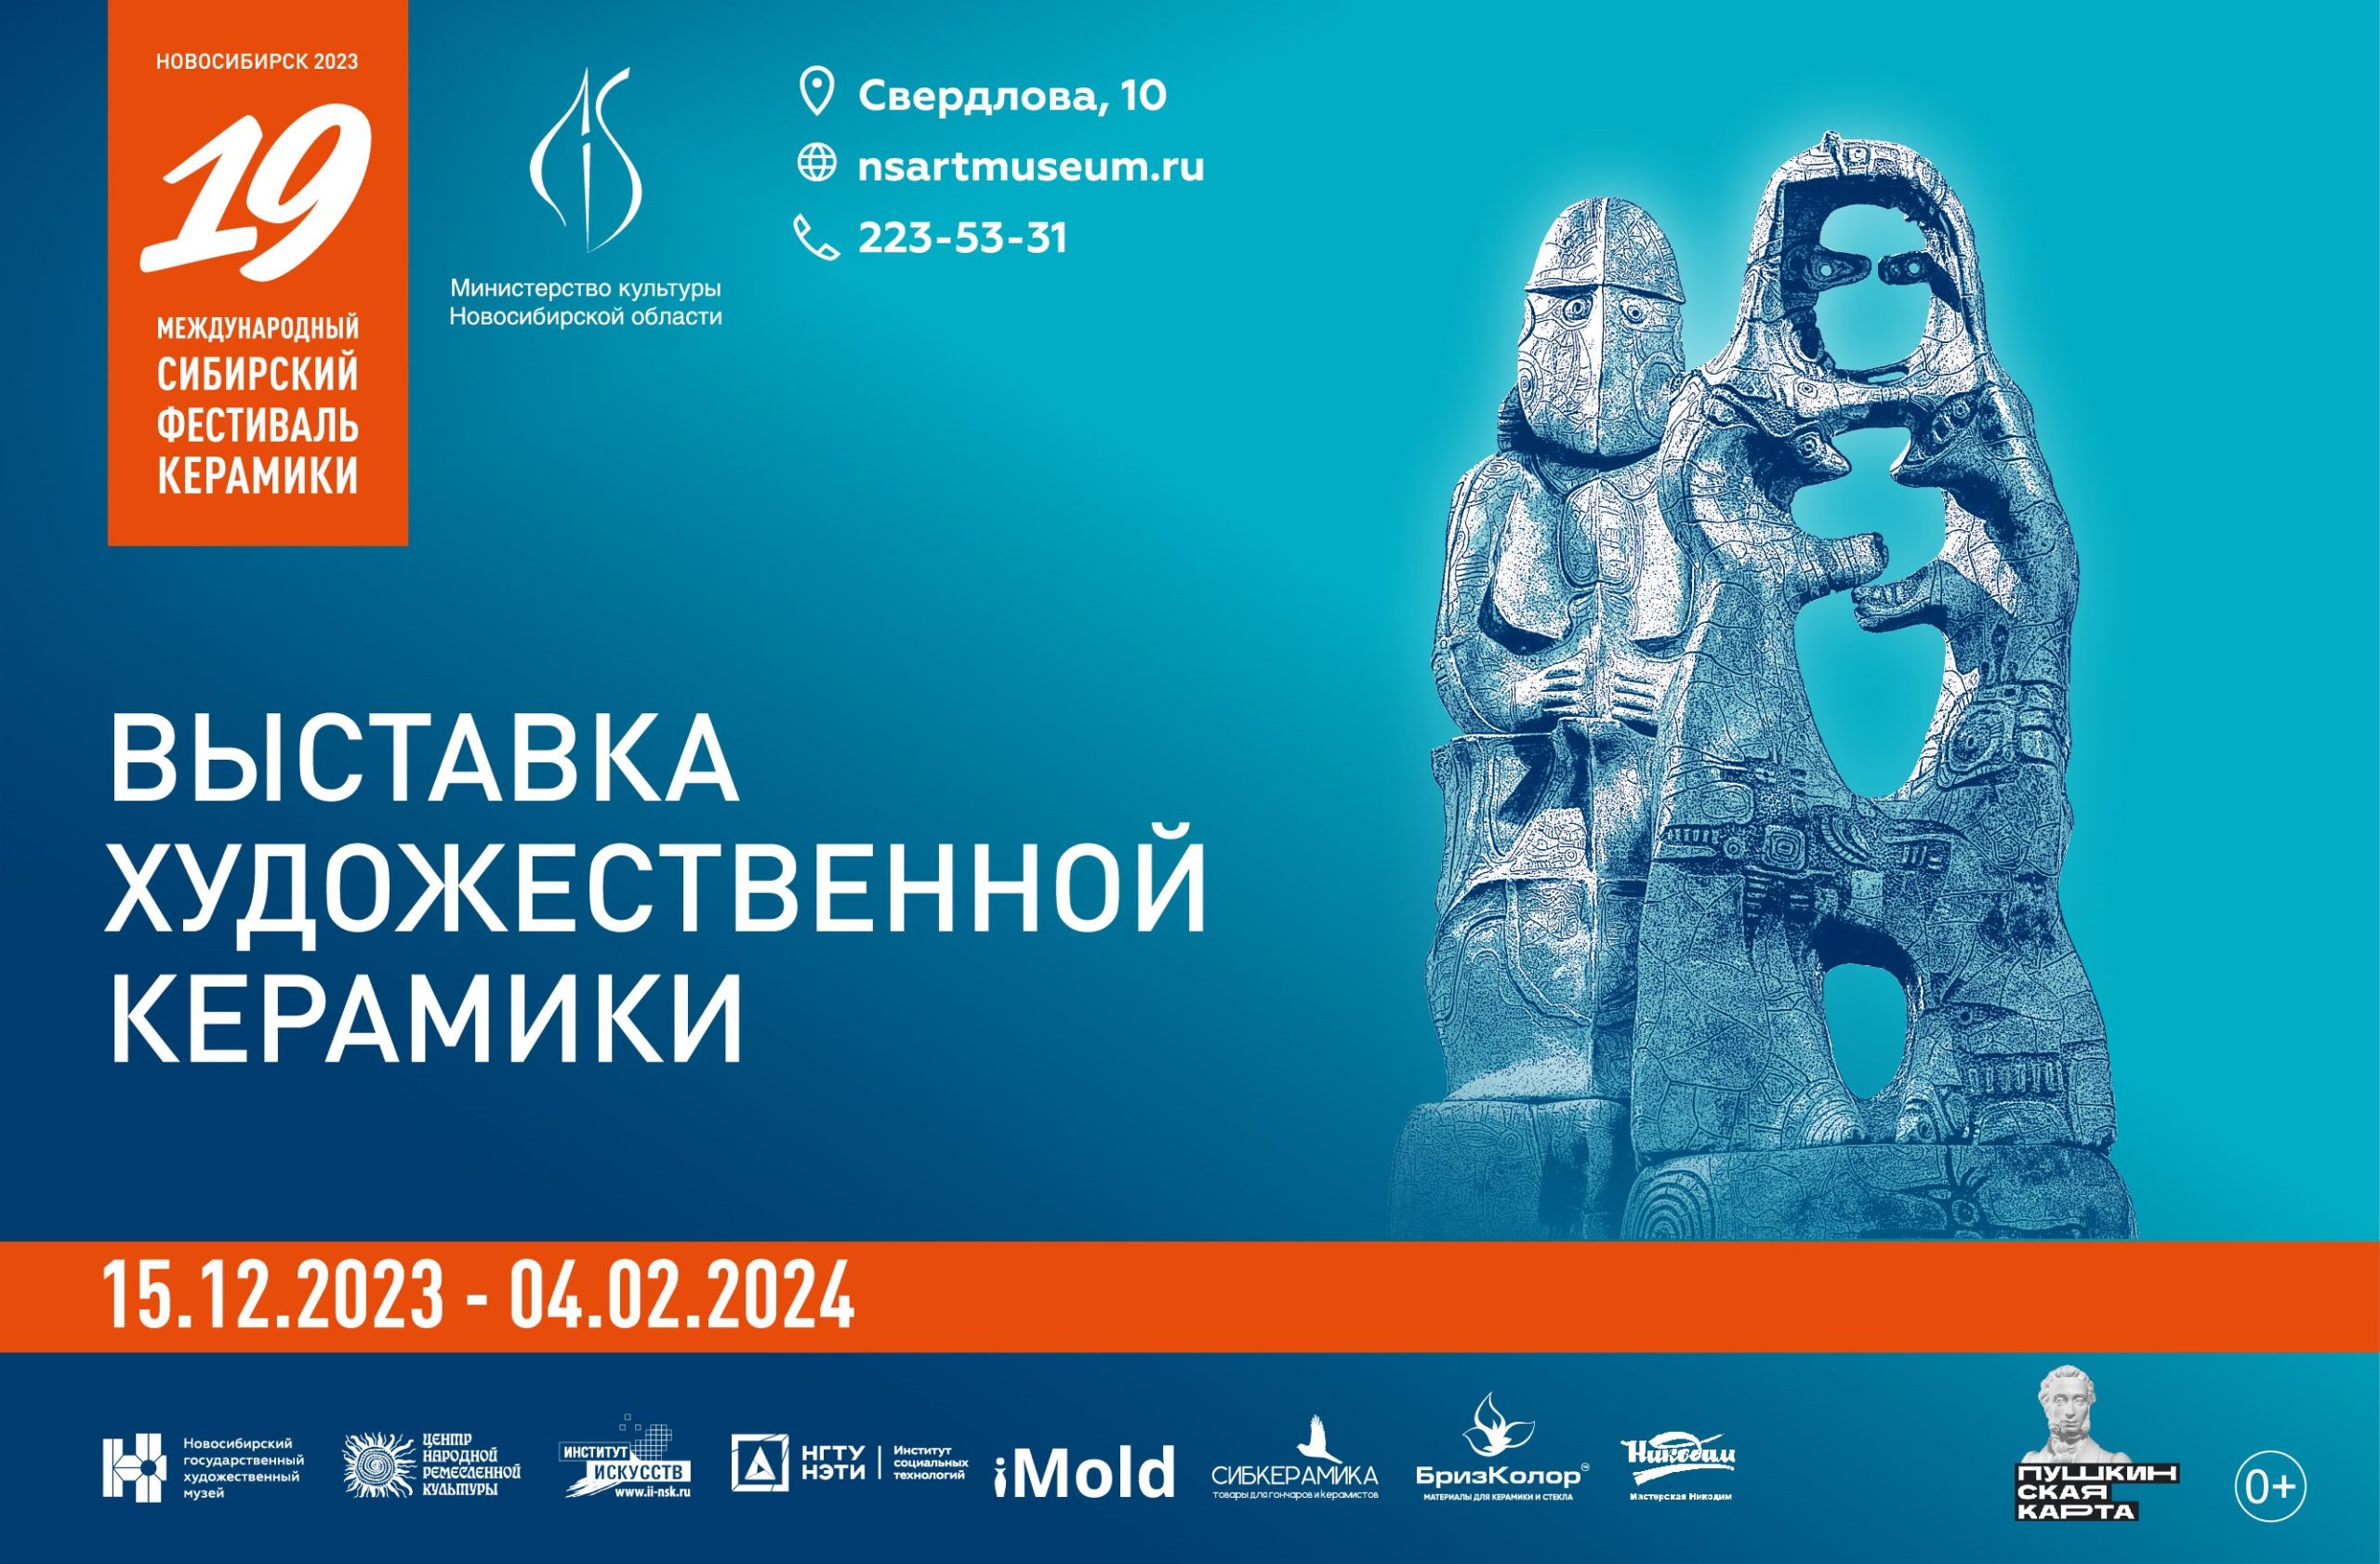 XIX Международный сибирский фестиваль керамики